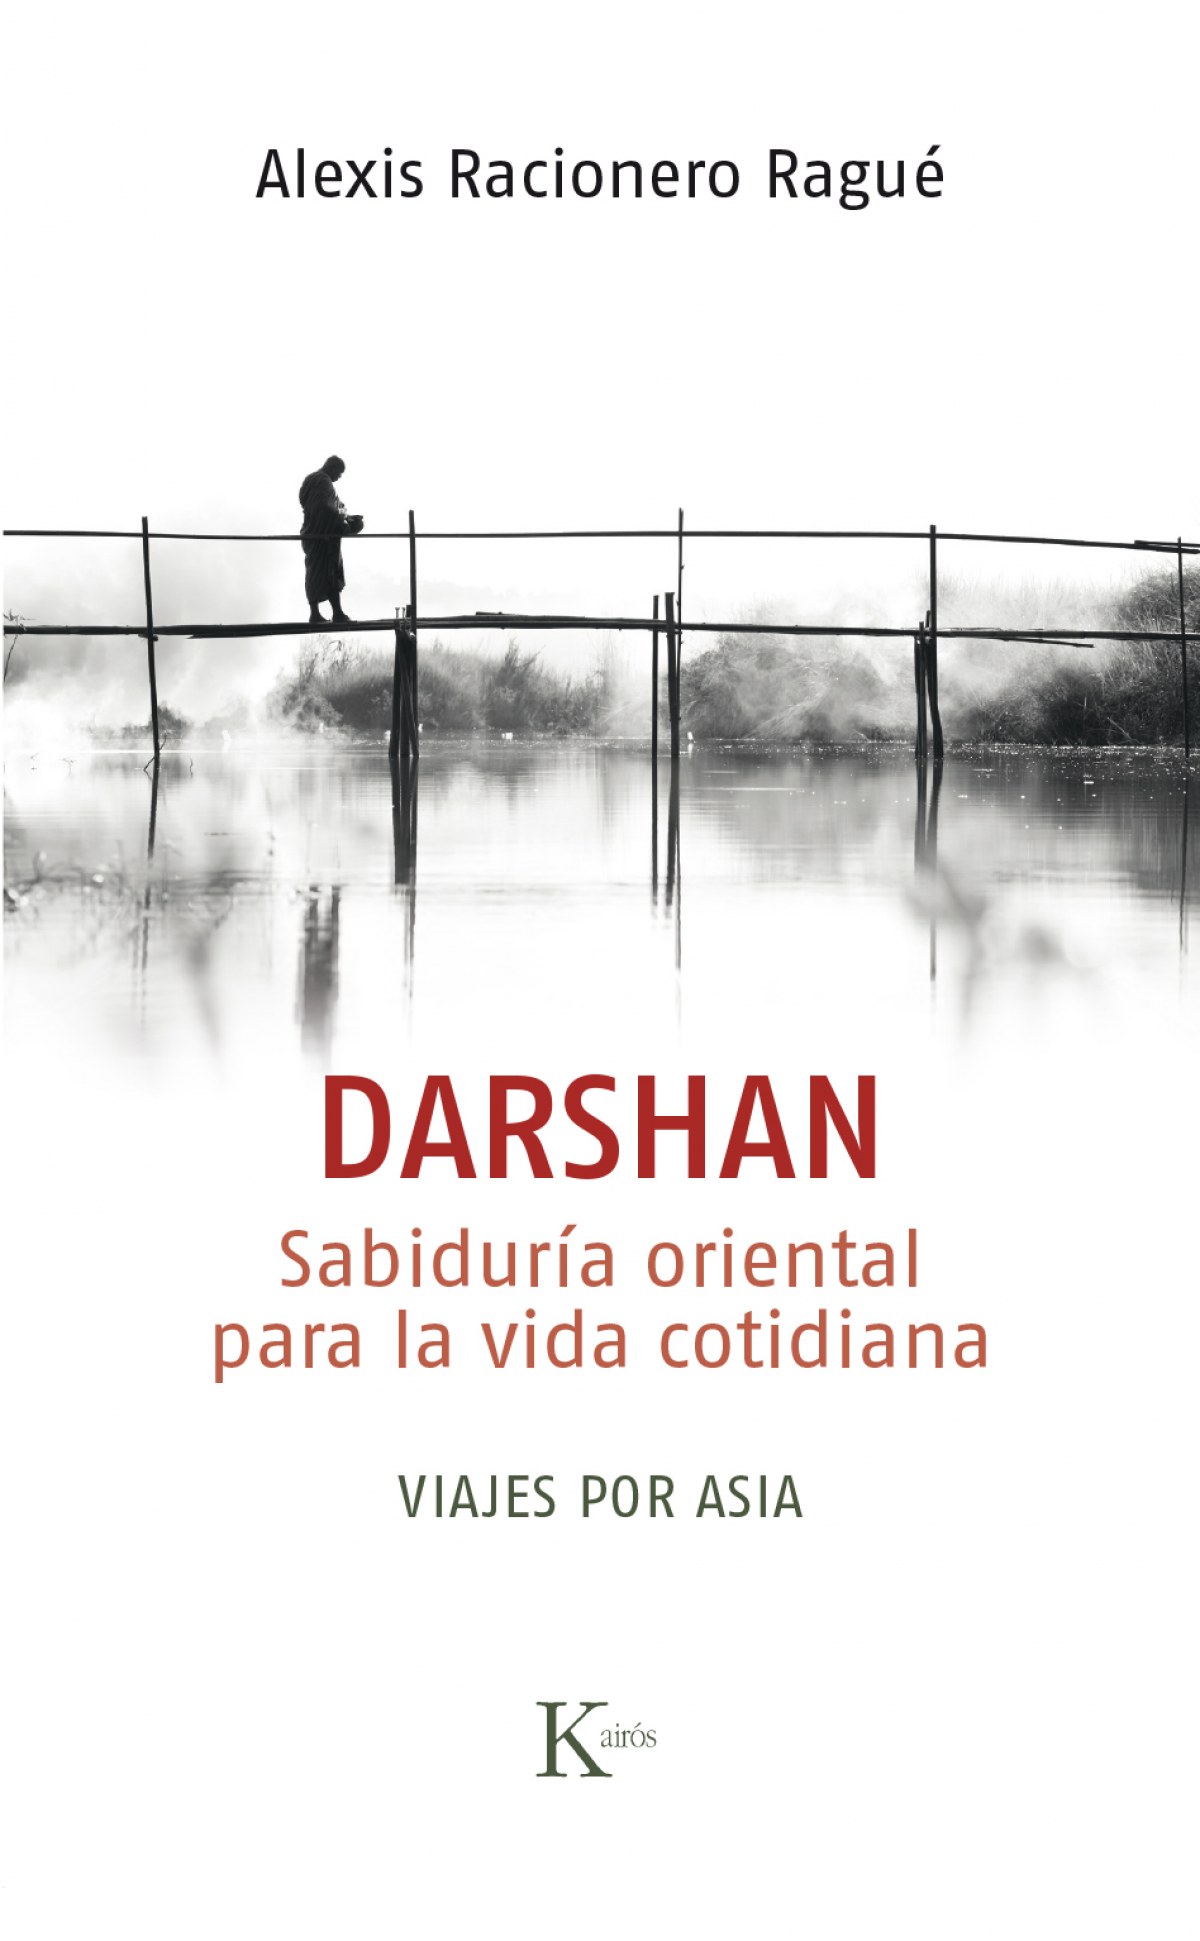 Darshan sabiduria oriental para la vida cotidiana. viajes - Racionero Ragué, Alexis